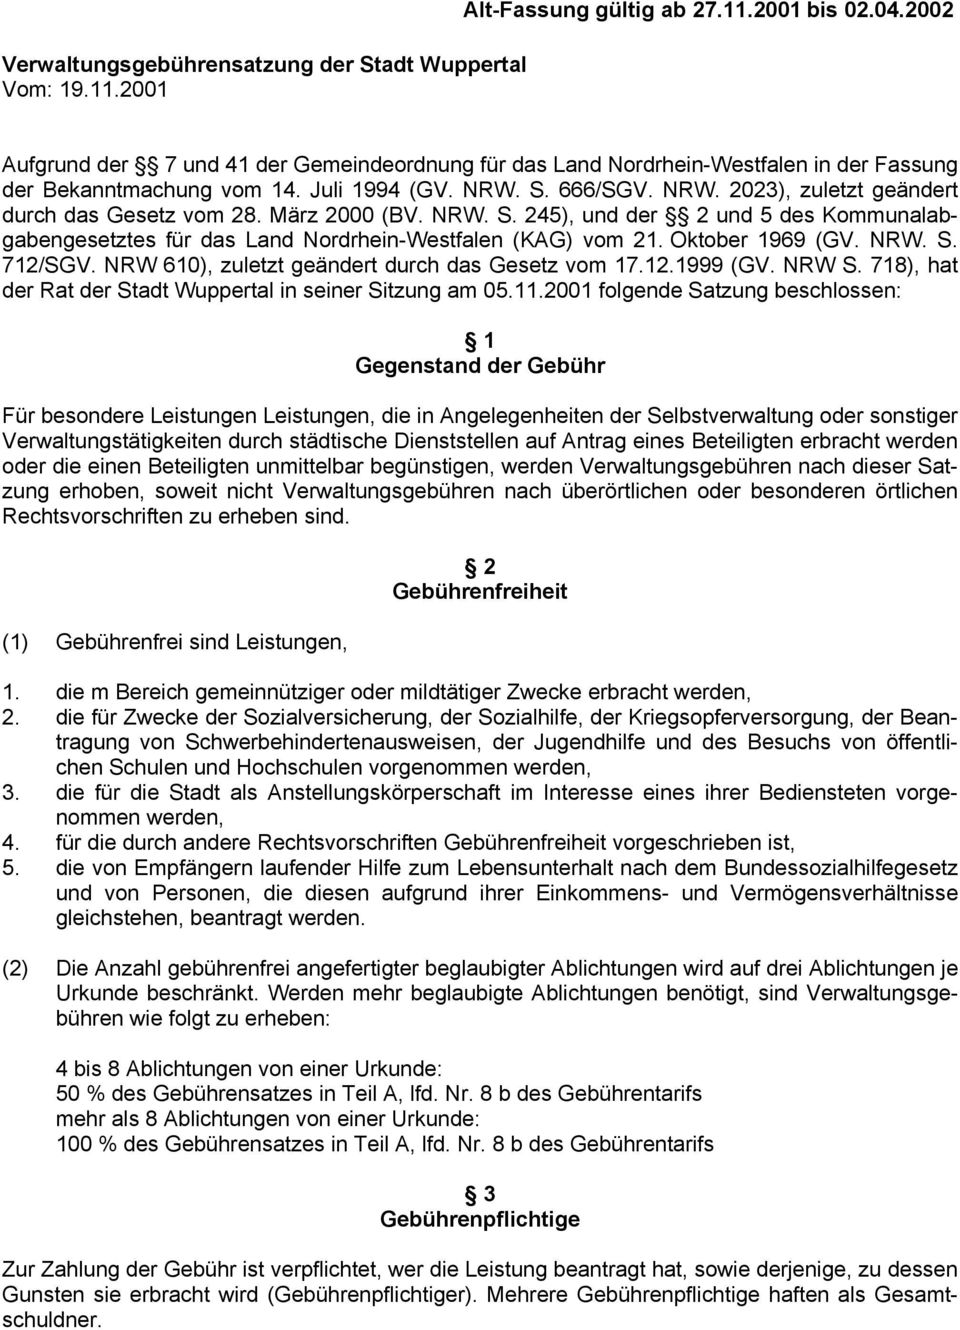 Oktober 1969 (GV. NRW. S. 712/SGV. NRW 610), zuletzt geändert durch das Gesetz vom 17.12.1999 (GV. NRW S. 718), hat der Rat der Stadt Wuppertal in seiner Sitzung am 05.11.